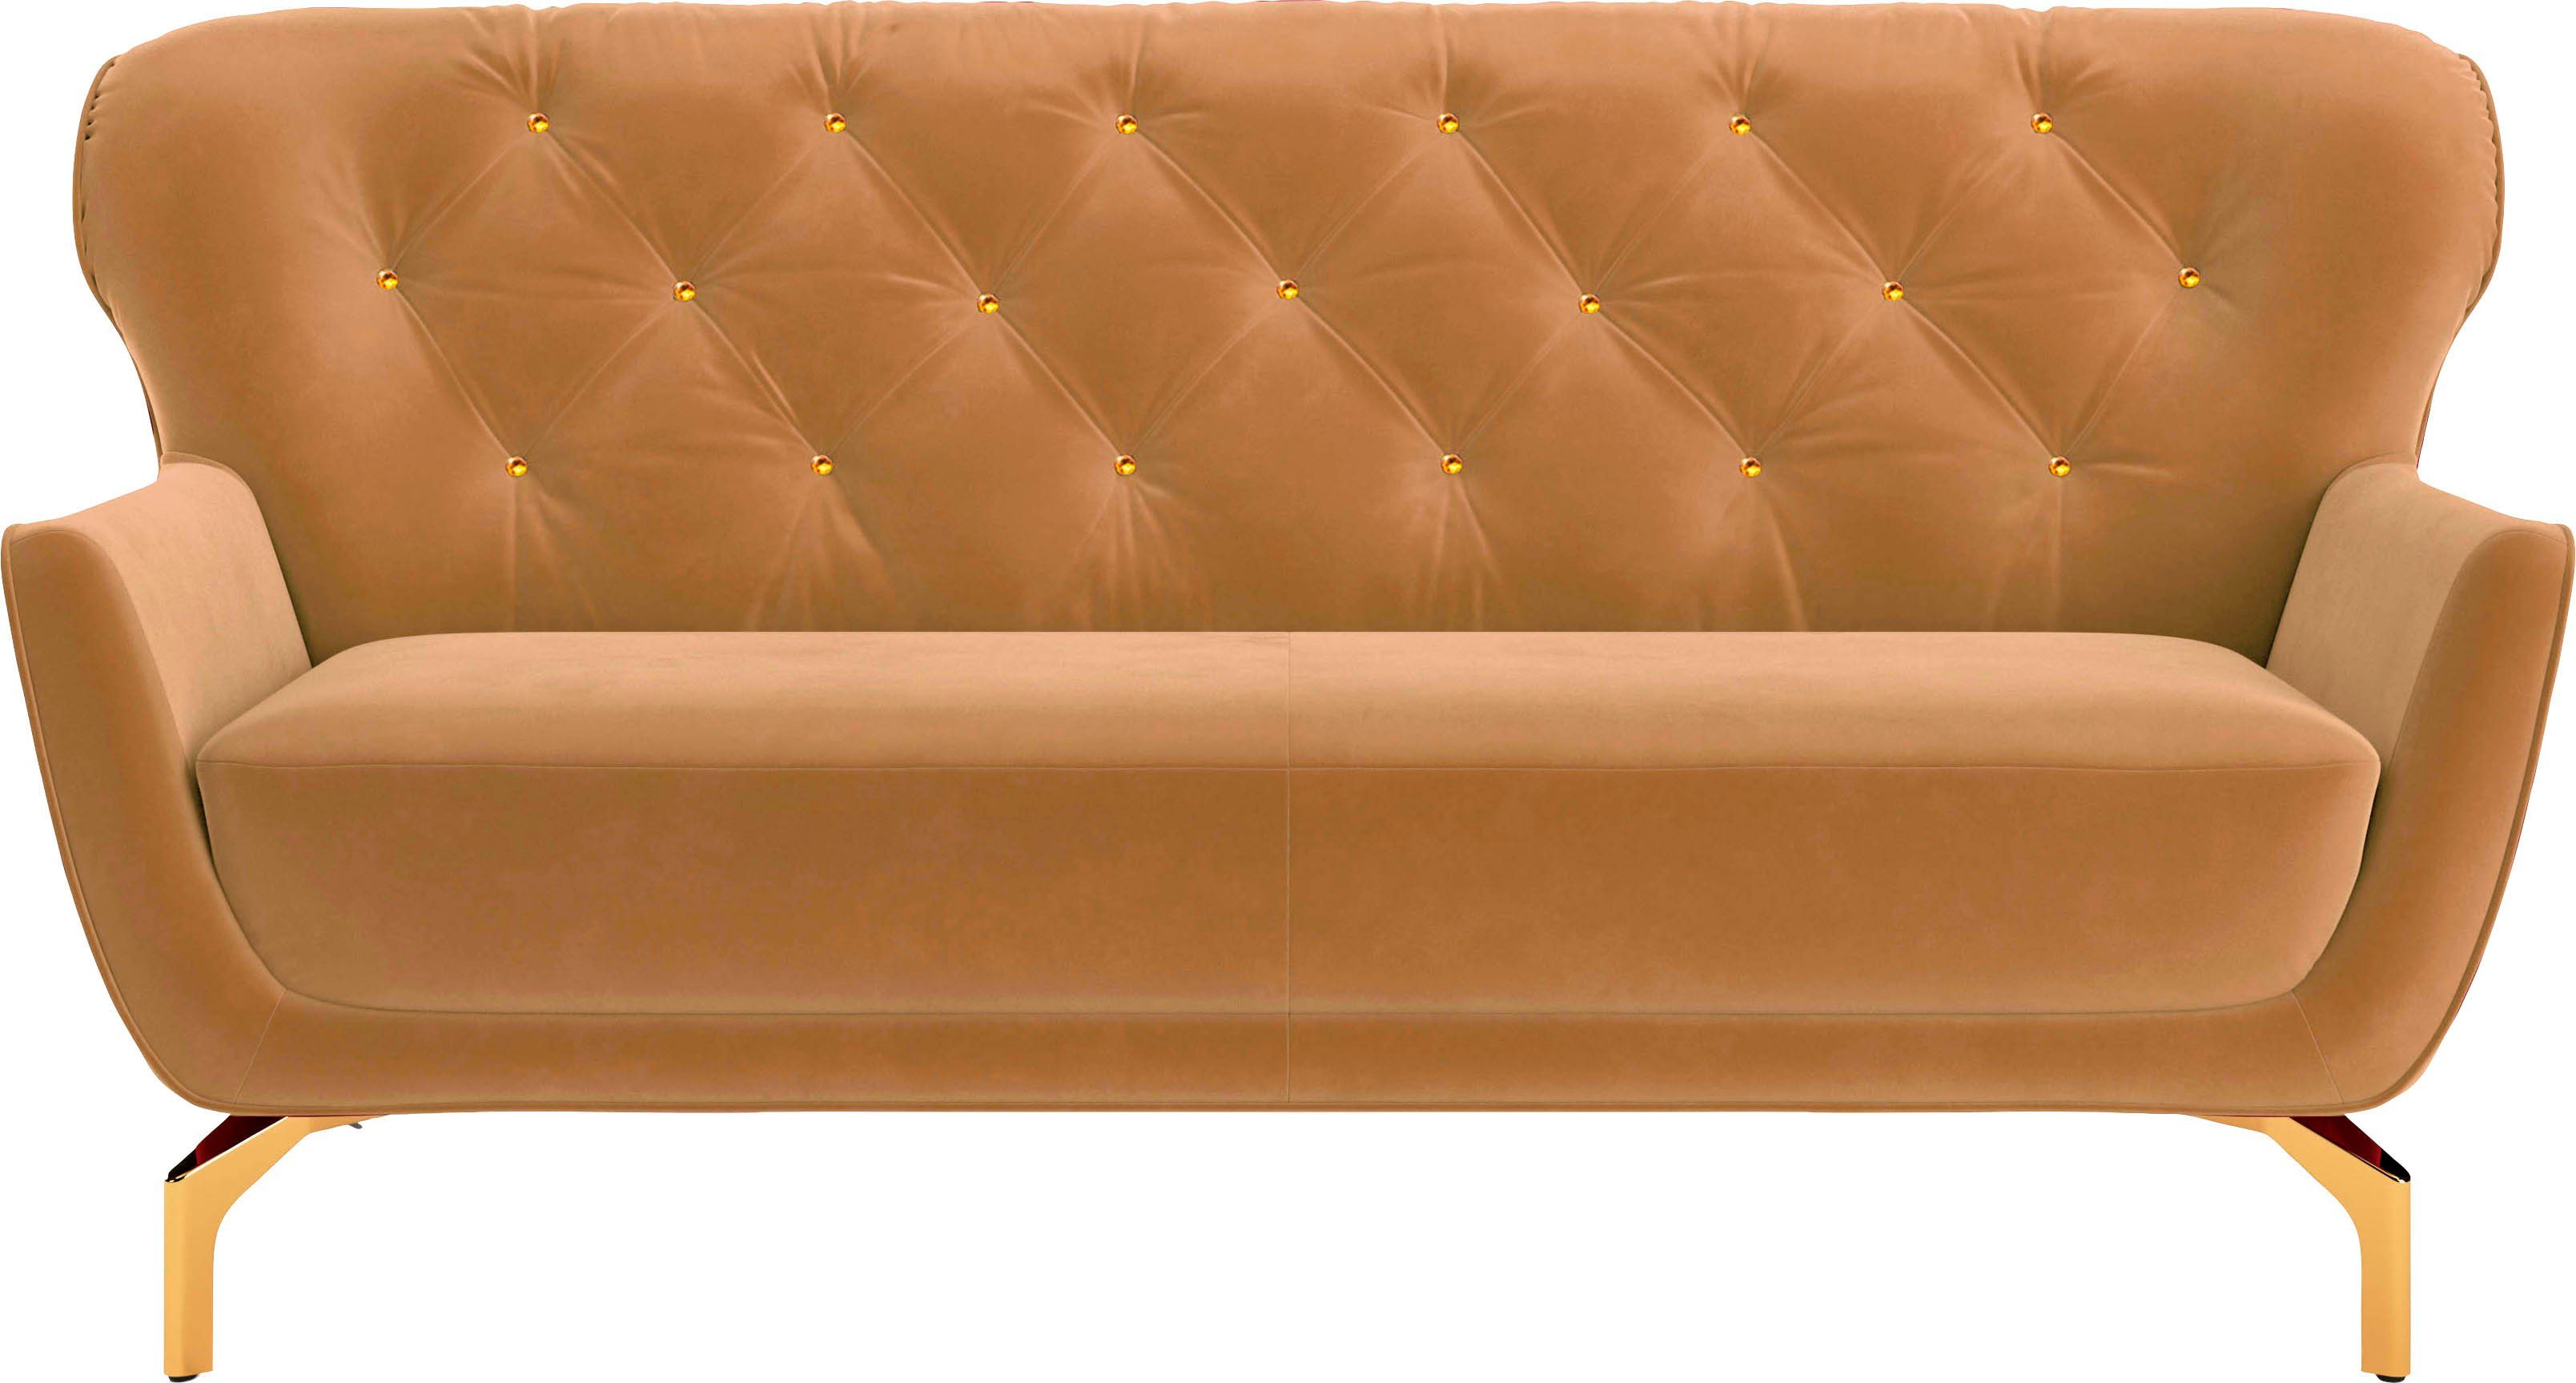 sit&more 3-Sitzer Orient 3 V, inkl. 2 Zierkissen mit Strass-Stein, goldfarbene Metallfüße | Einzelsofas